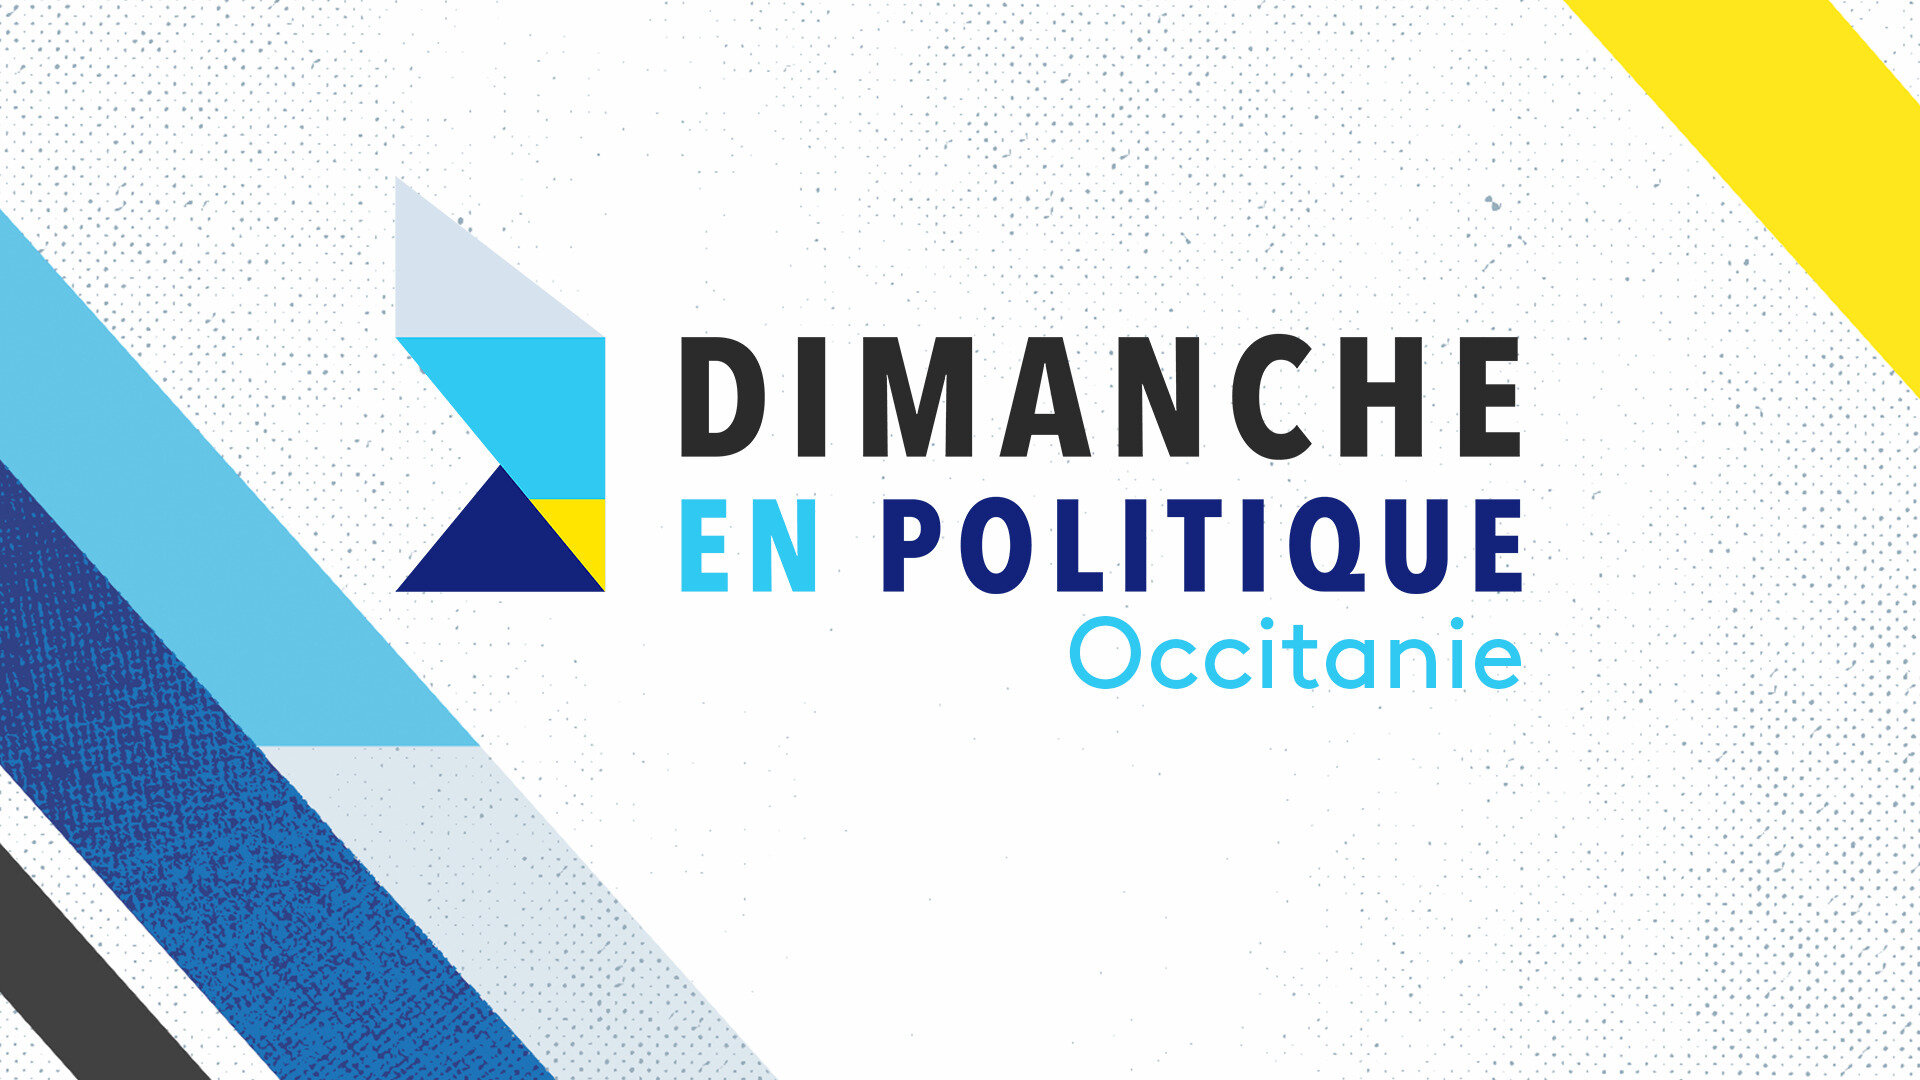 Dimanche en politique - Occitanie : Présidentielle 2022 : qui parraine qui en Occitanie ?